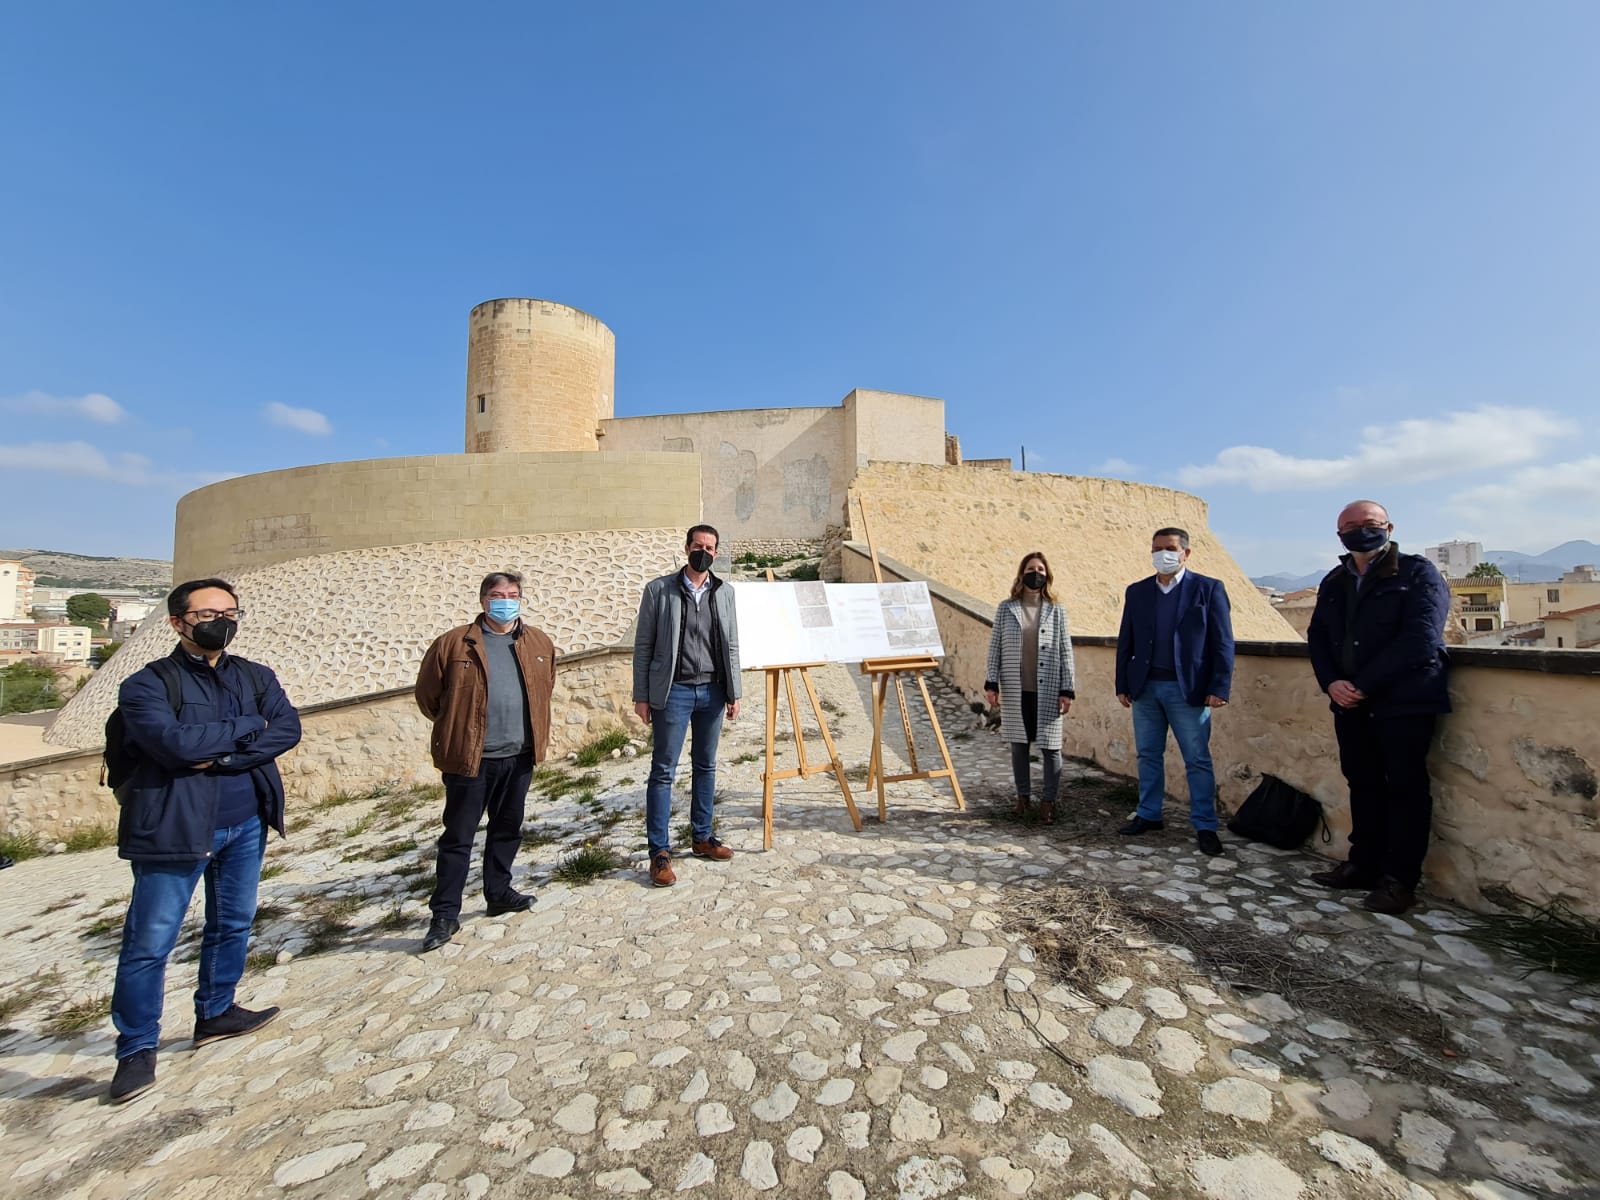 El Ayuntamiento pone en marcha el Plan Especial de Protección y Conservación del Castillo de Elda como instrumento urbanístico para la ordenación de todo su entorno